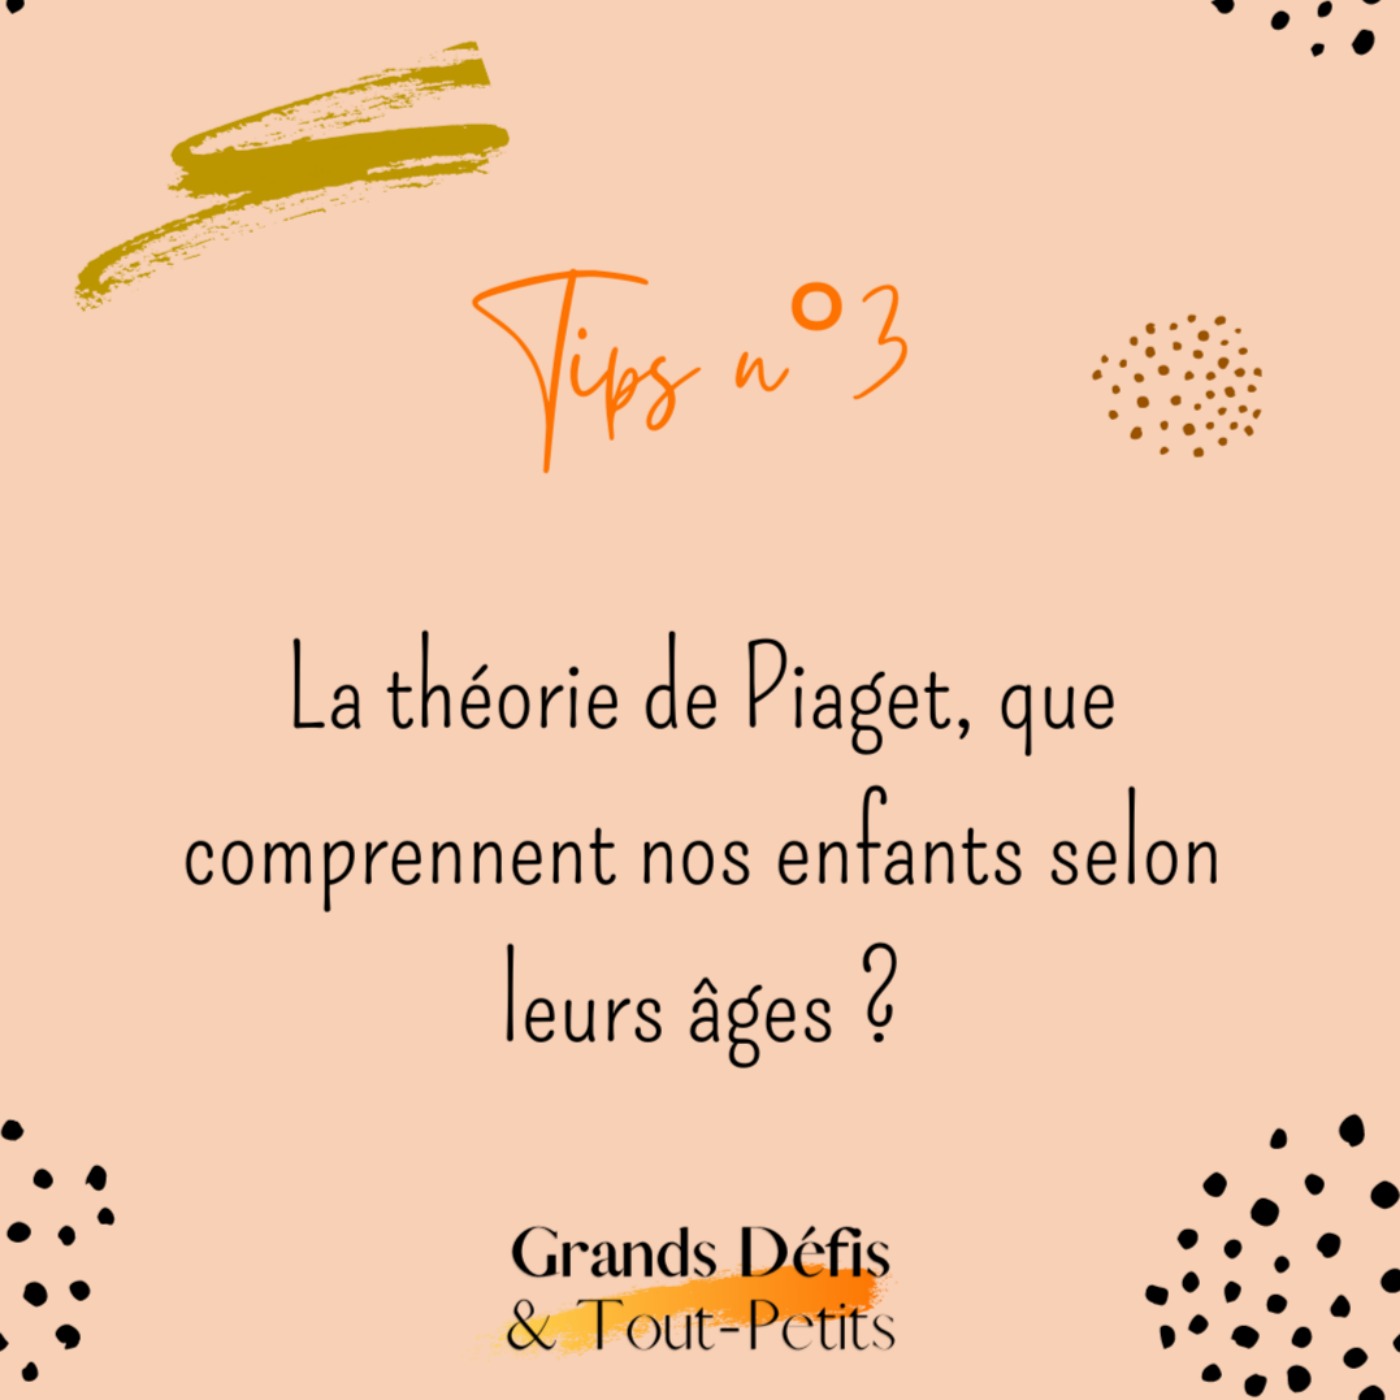 Tips n°3 : la théorie de Piaget, que comprennent nos enfants selon leurs âges ?